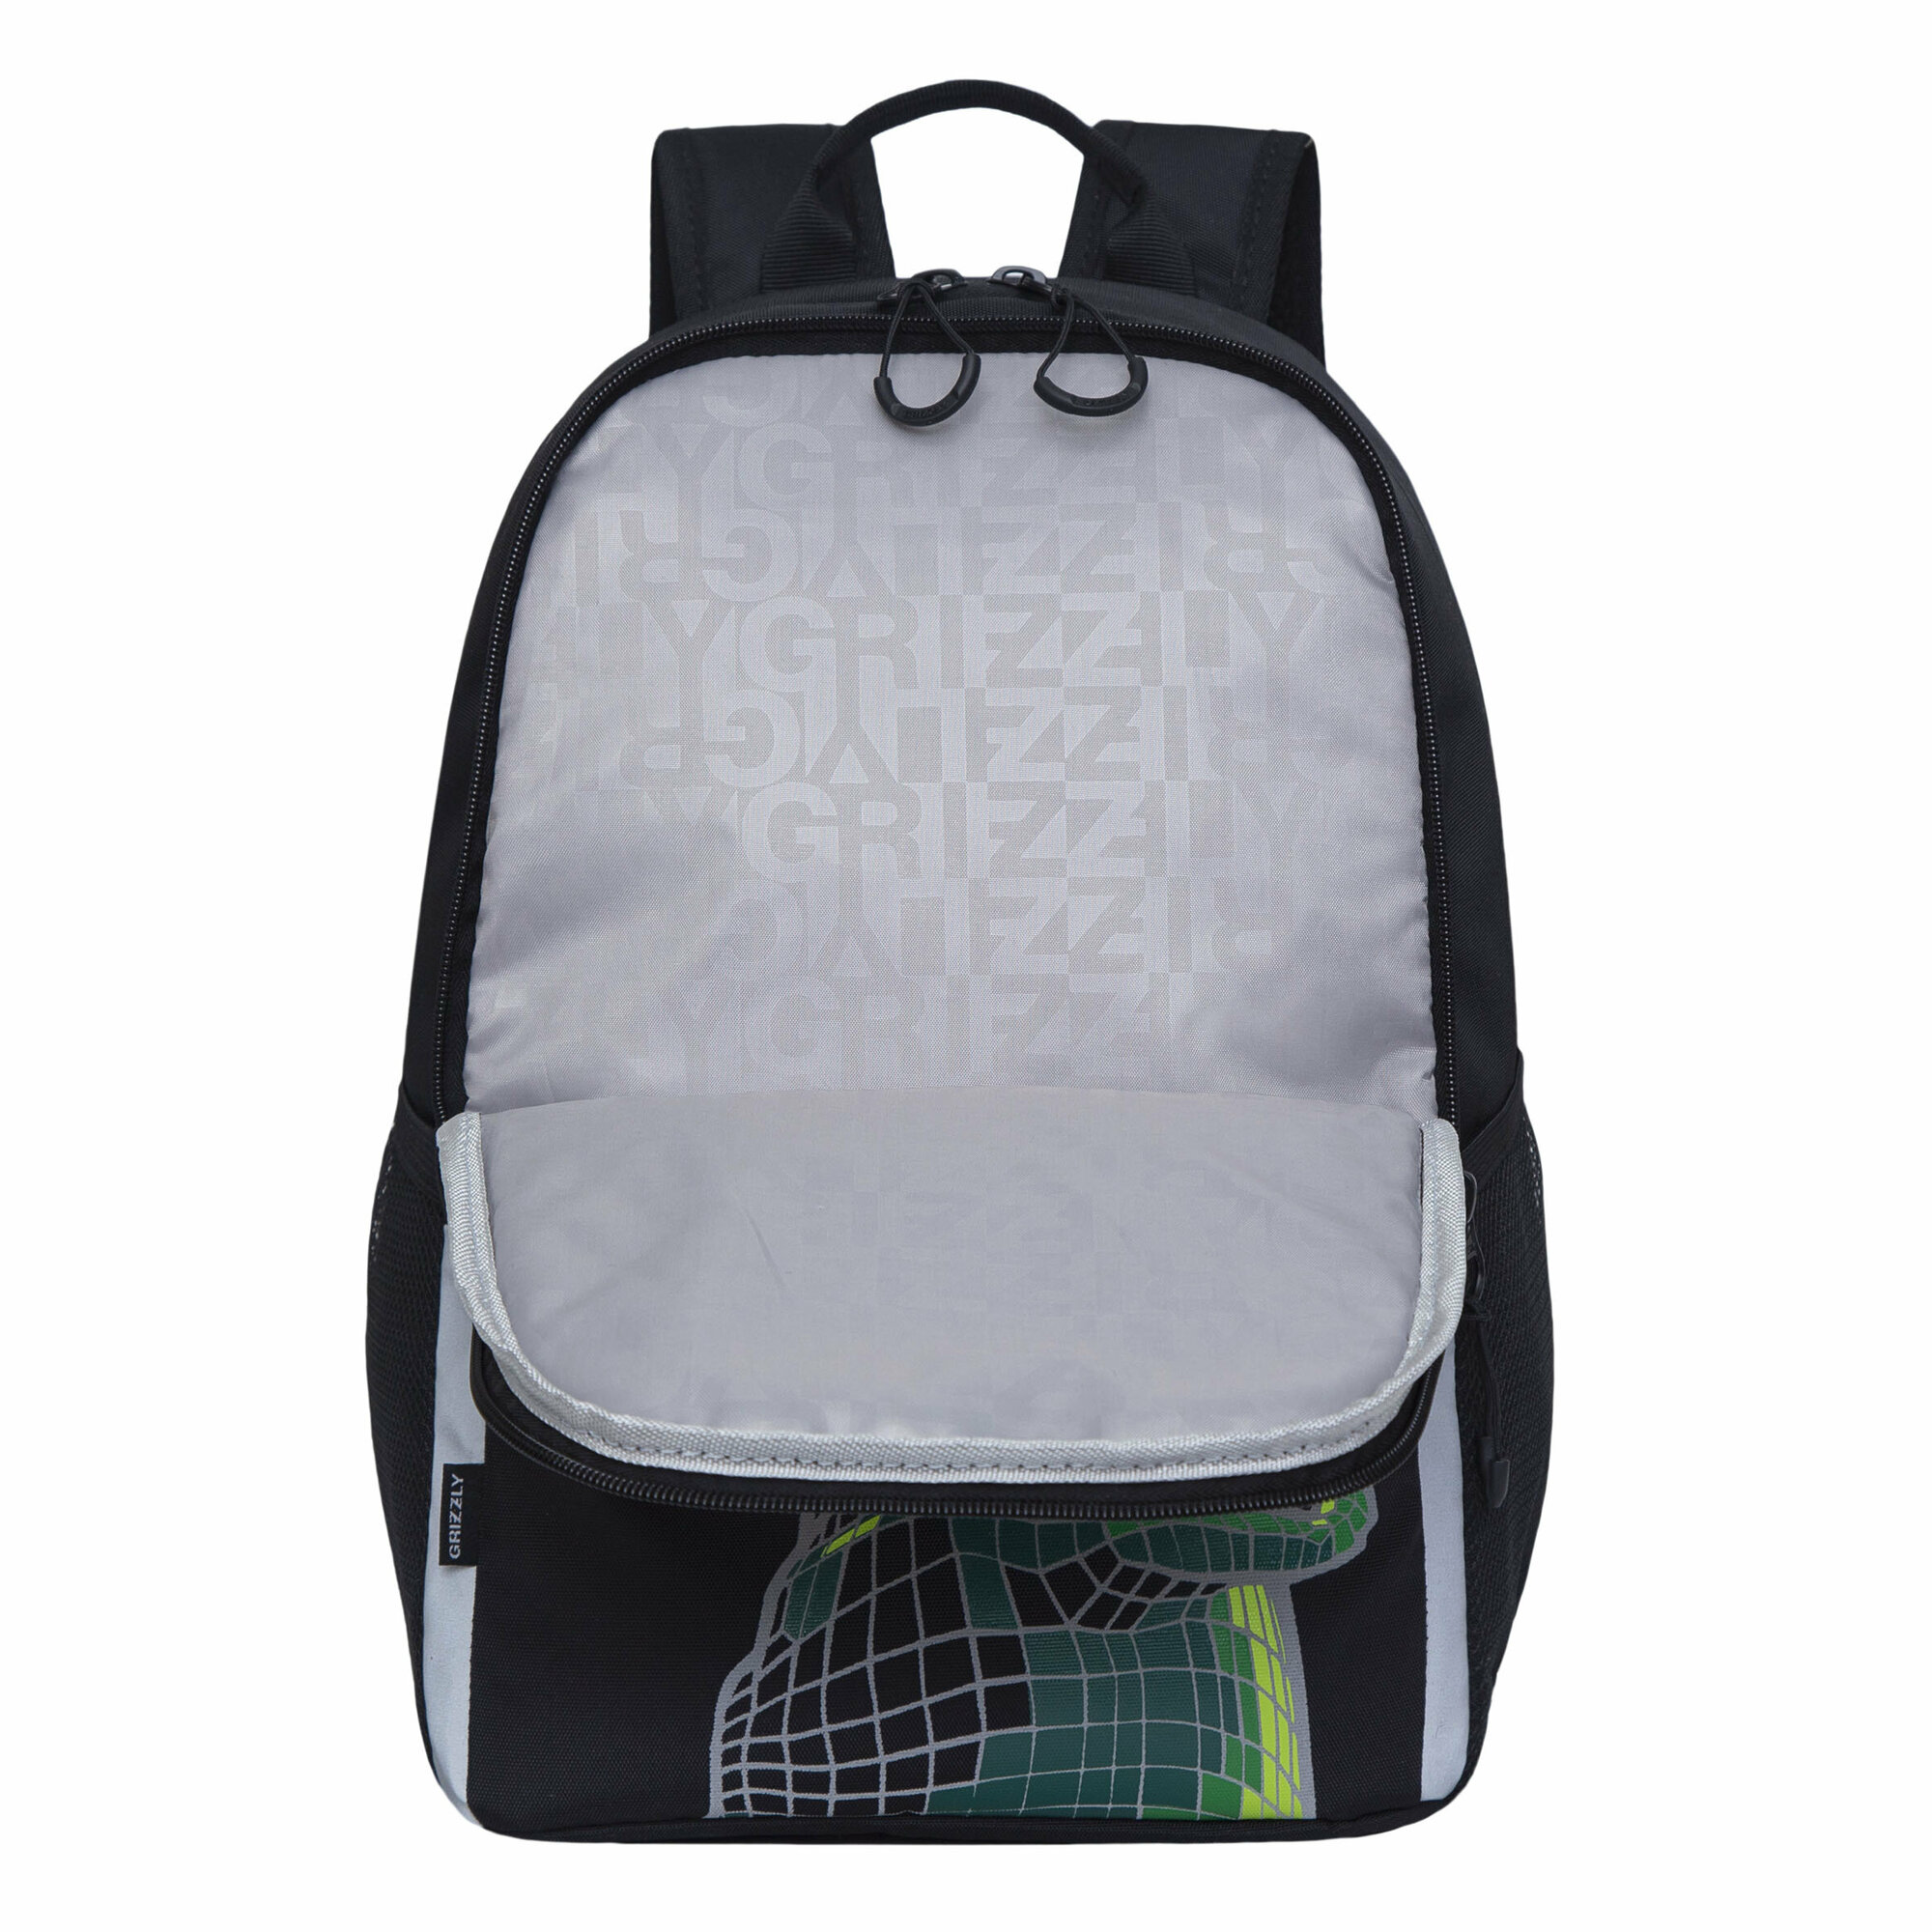 Рюкзак школьный GRIZZLY легкий с жесткой спинкой, двумя отделениями, для мальчика RB-251-1/2